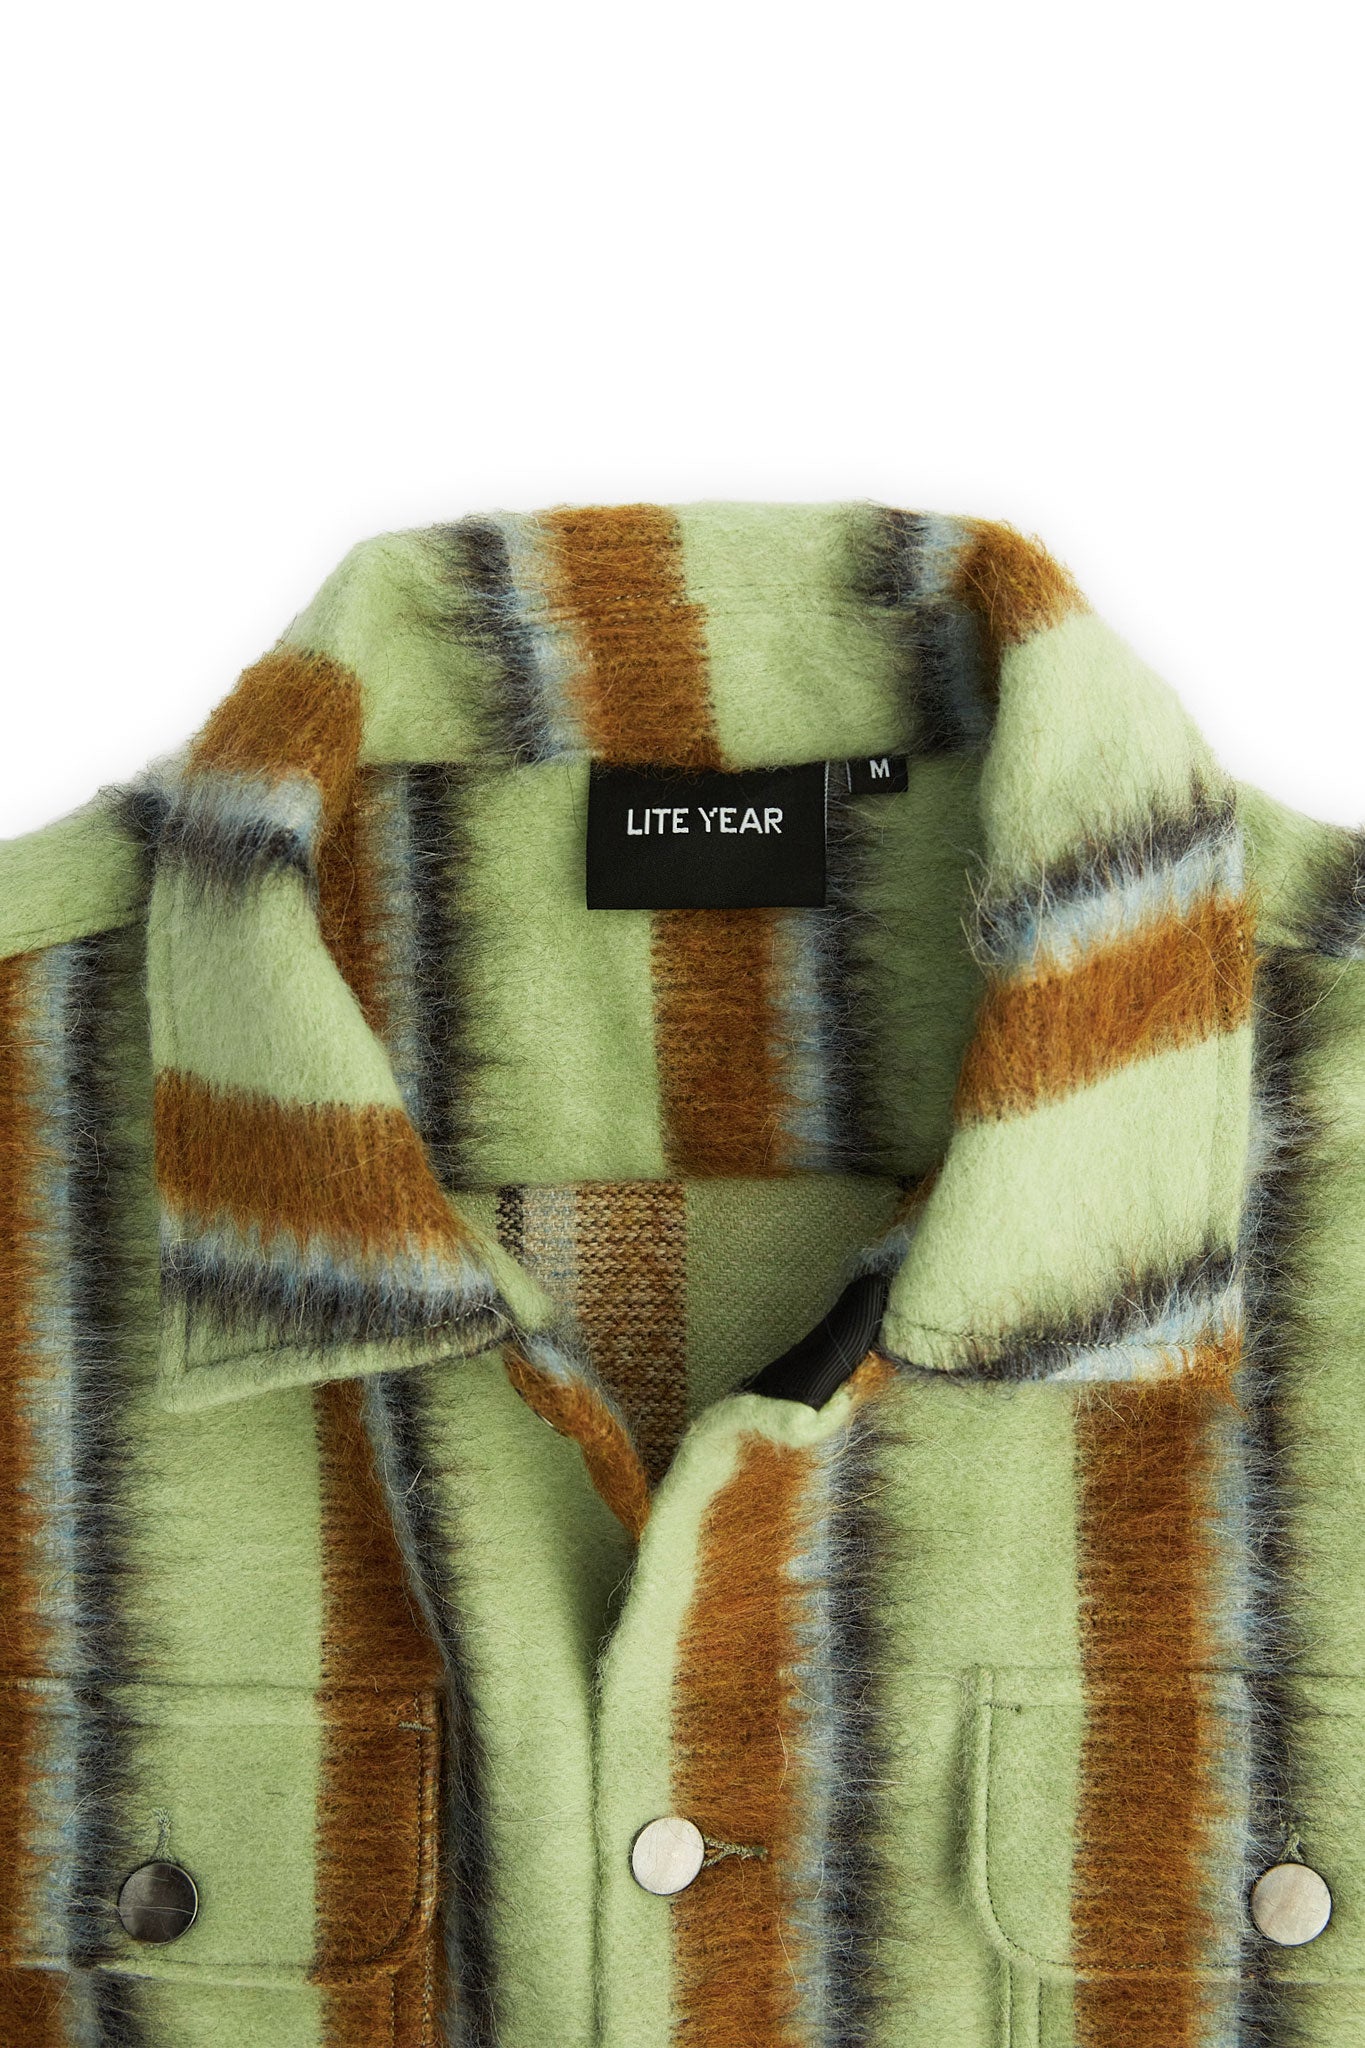 Work Jacket - Wool Green Stripe